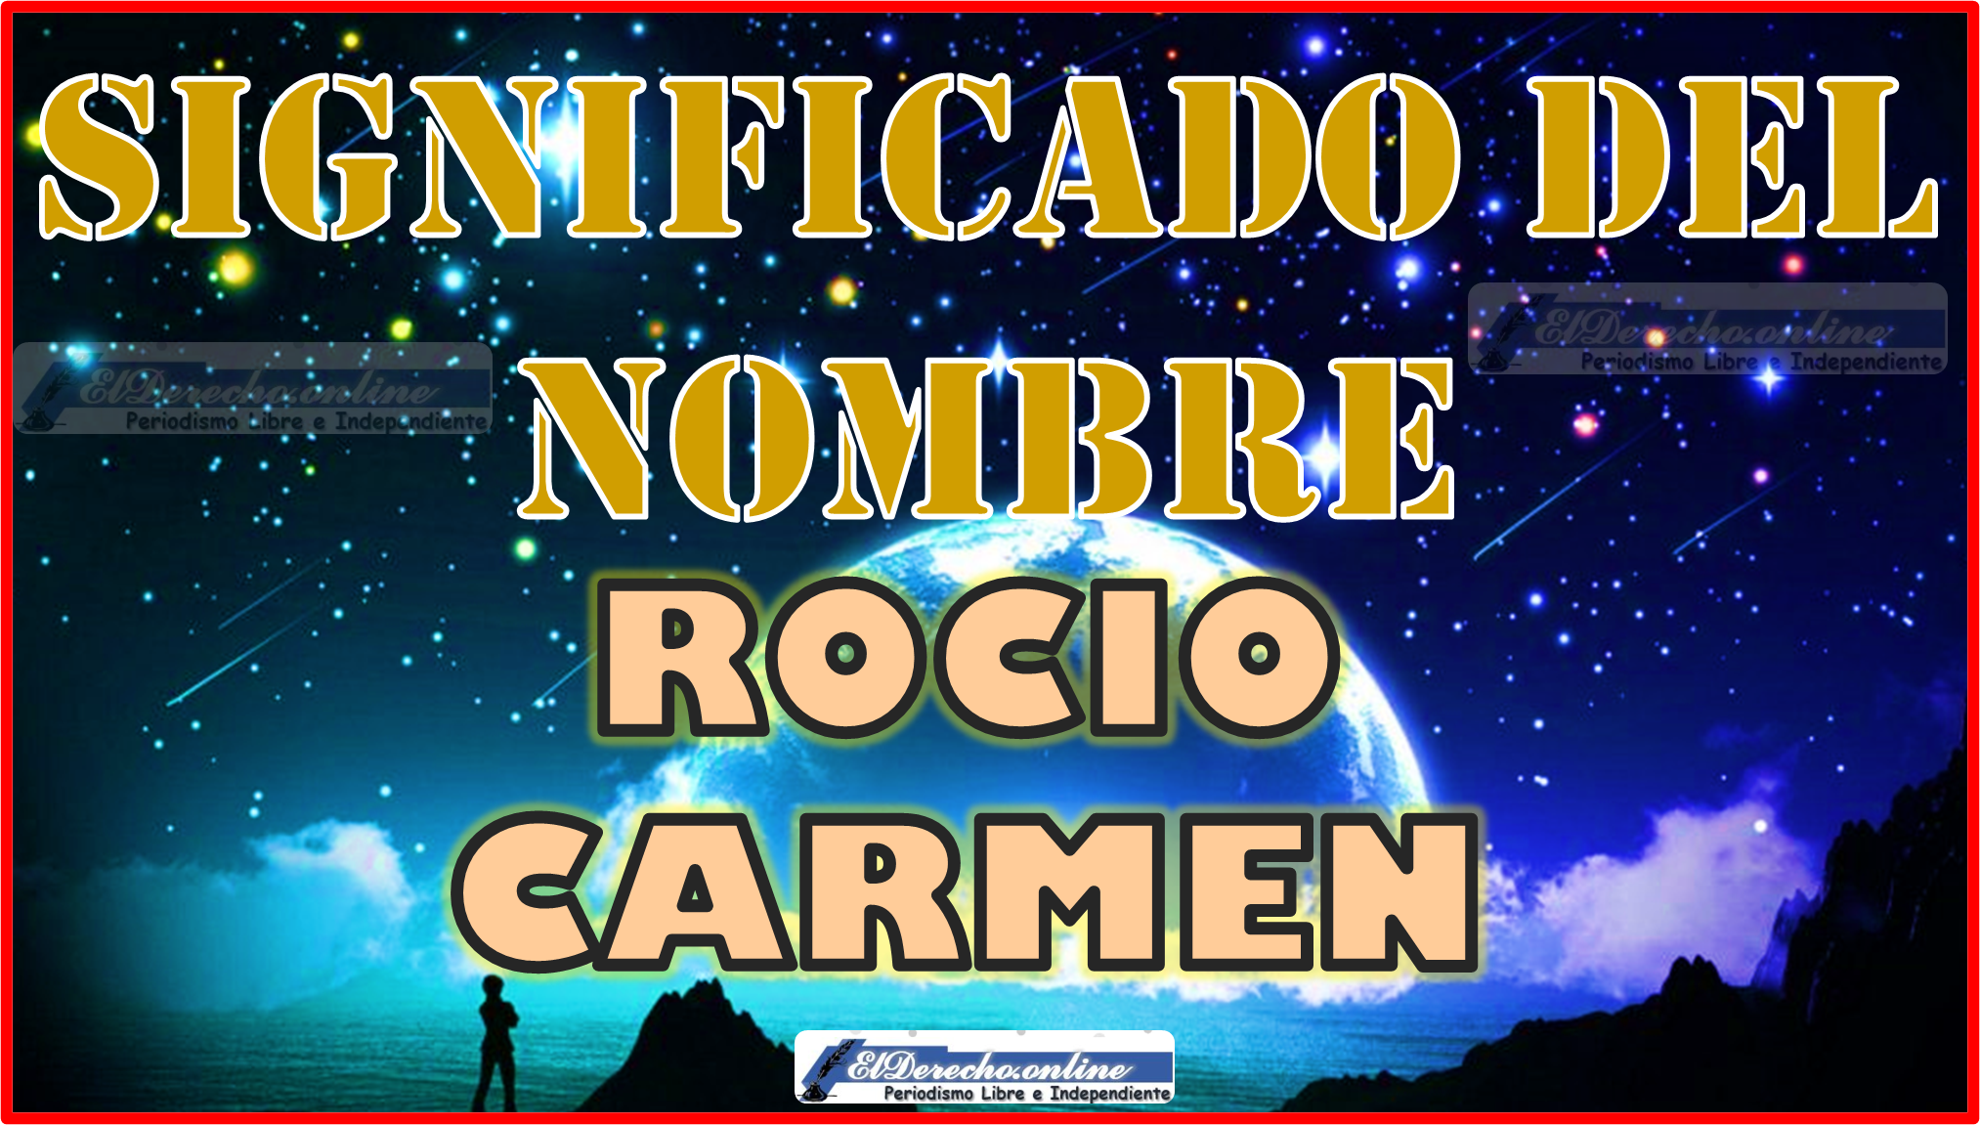 Significado del nombre Rocio Carmen, su origen y más